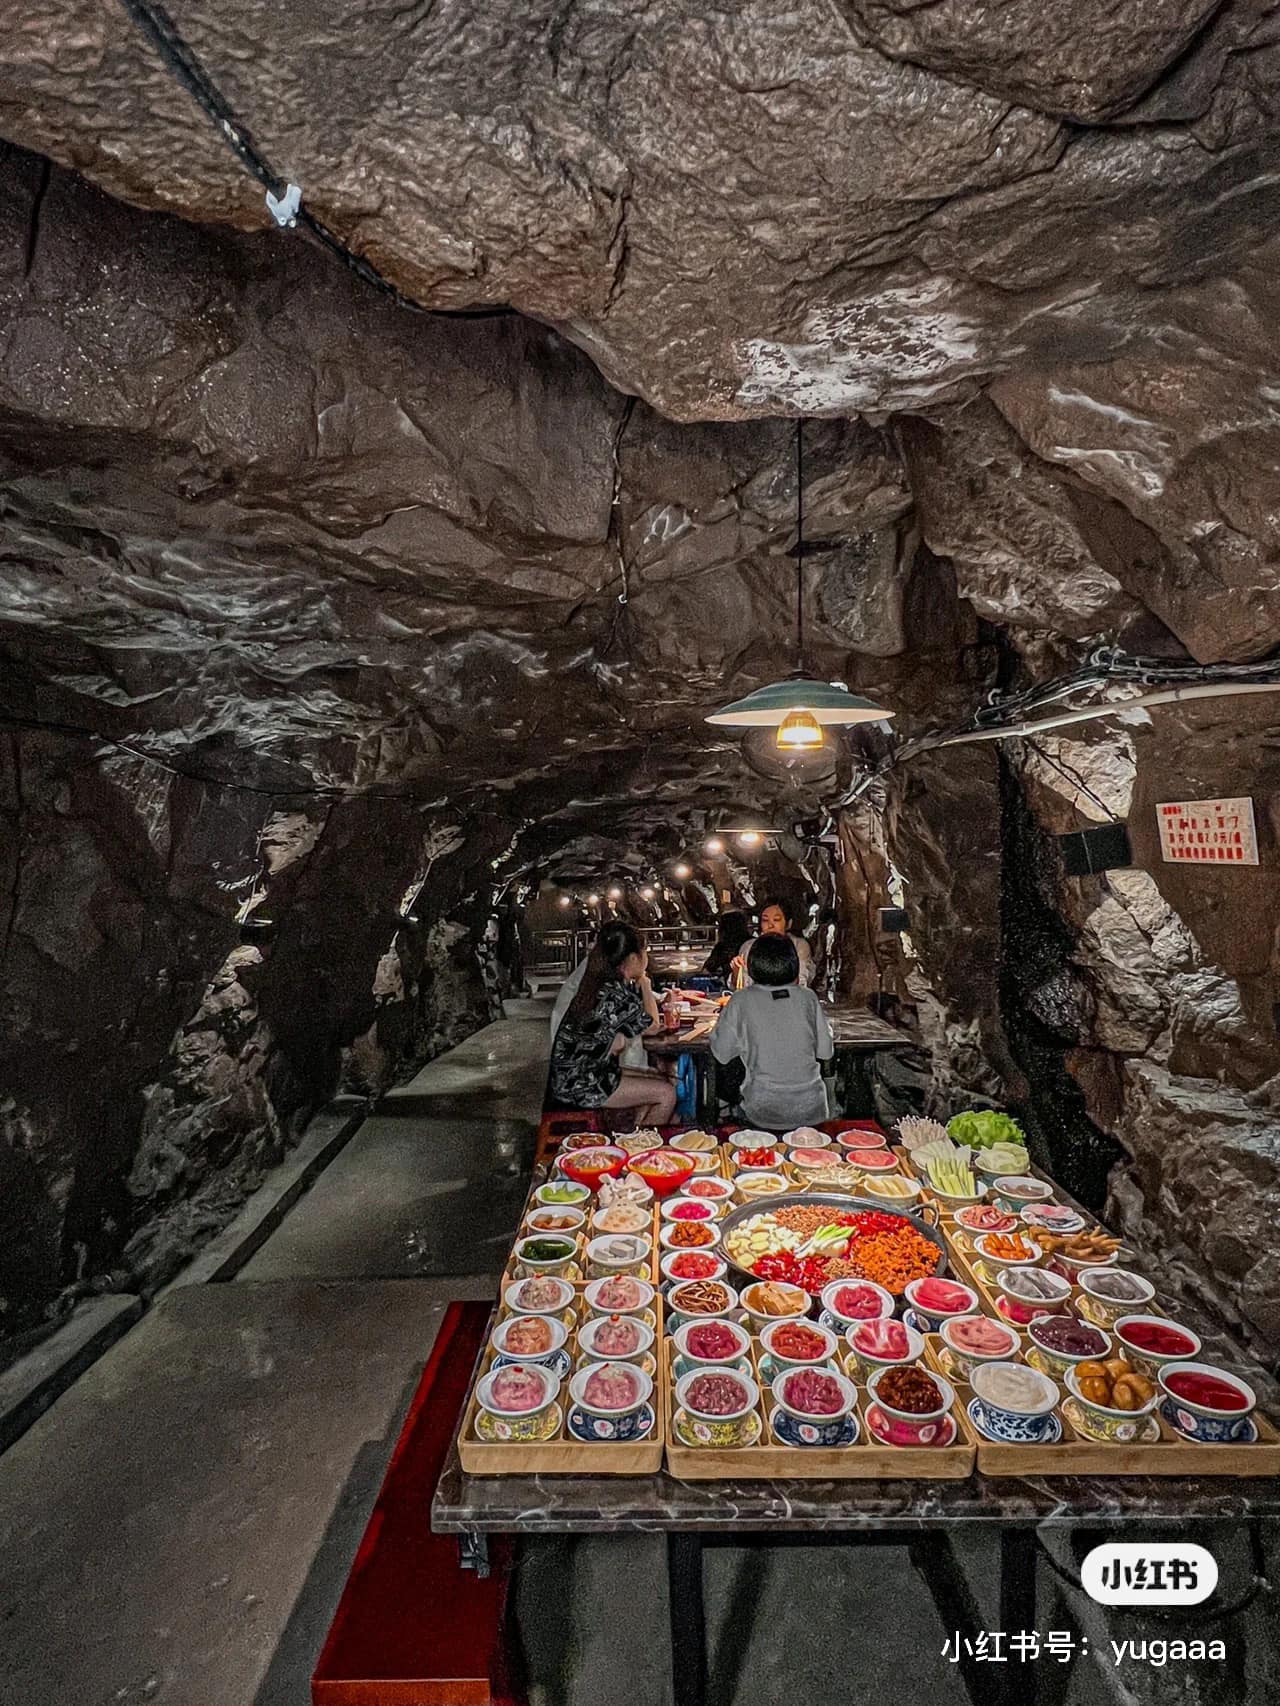 Độc đáo với nhà hàng lẩu dưới hầm trú ẩn hút khách tại Trùng Khánh, Trung Quốc - Ảnh 2.